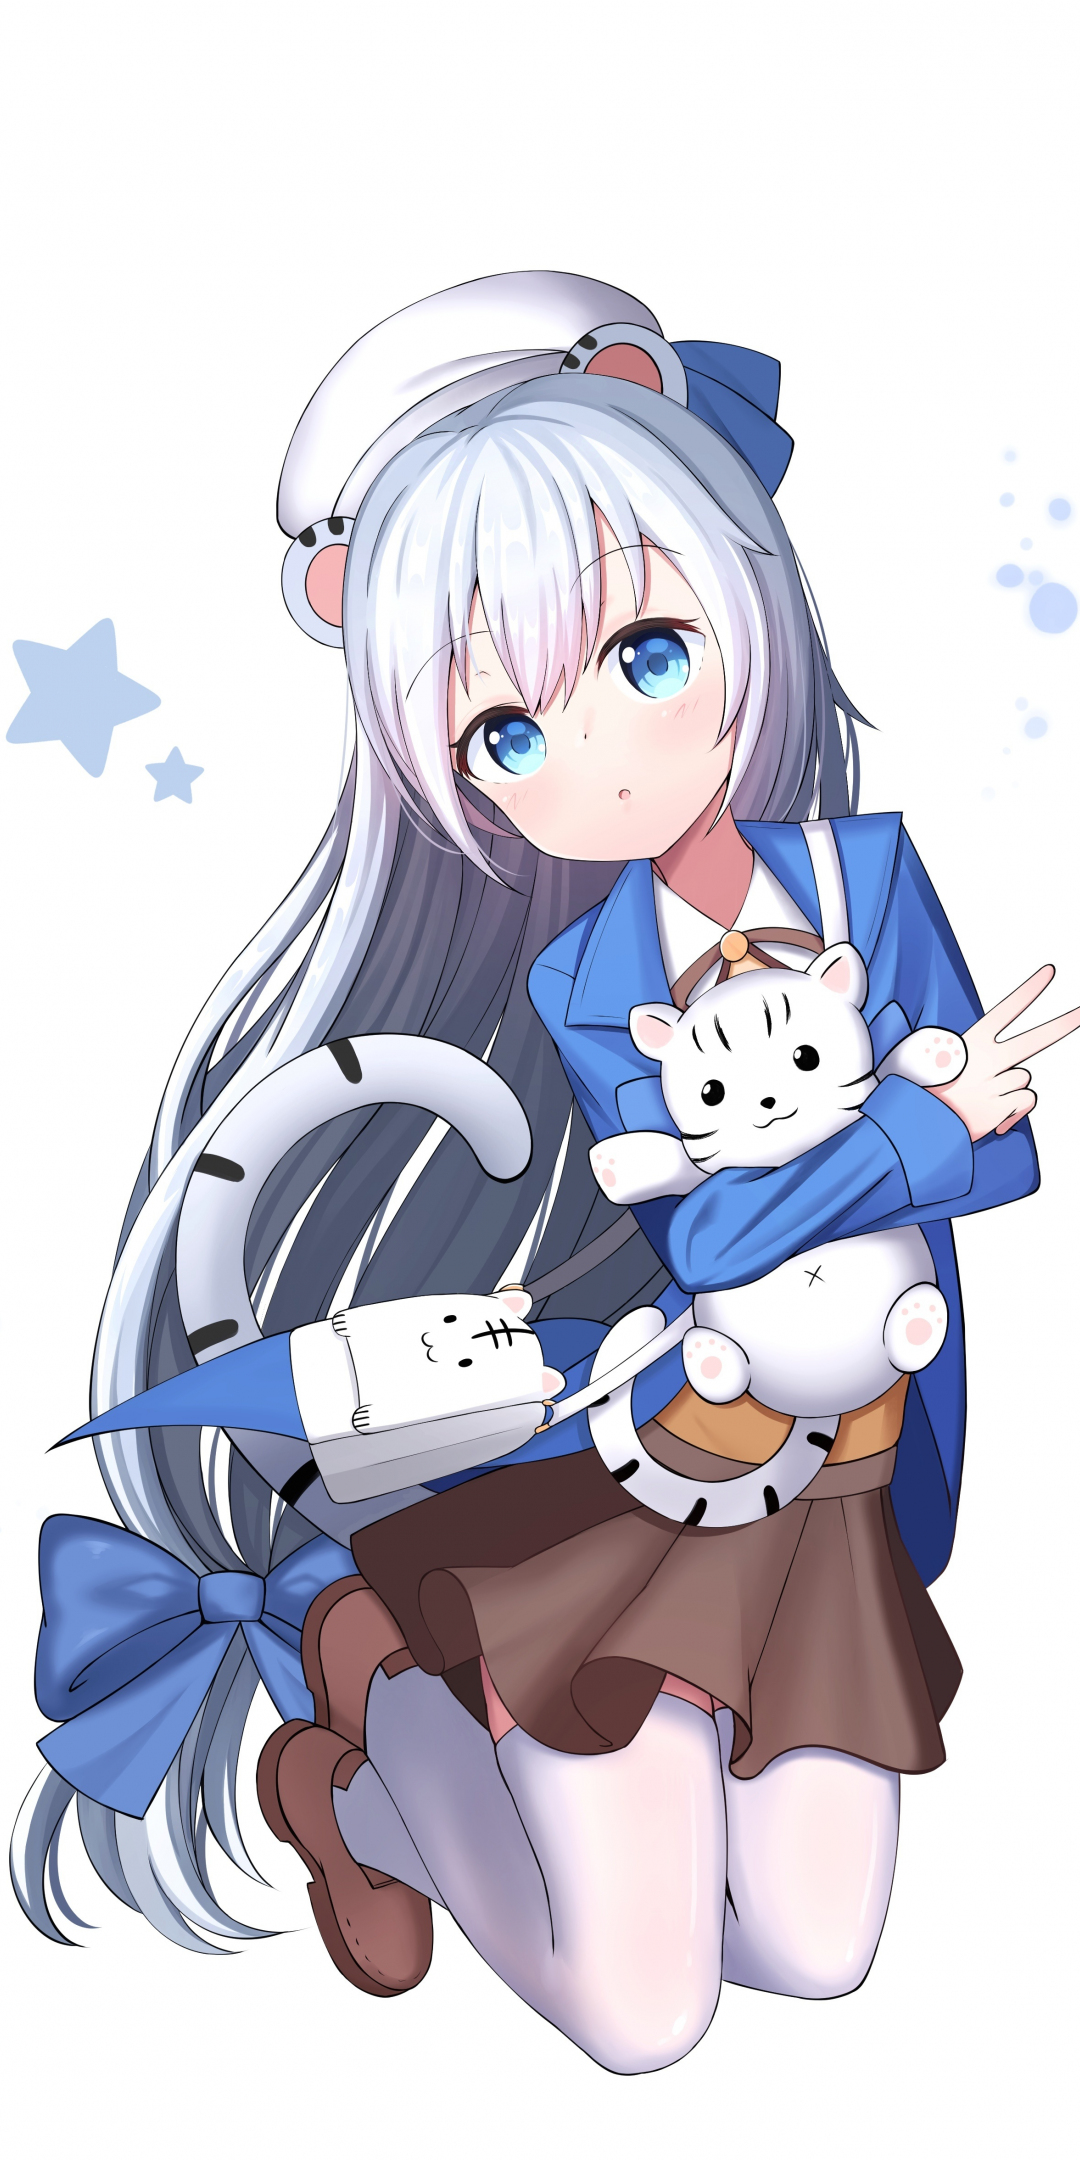 White hair, cute, jump, anime girl, 1080x2160 wallpaper